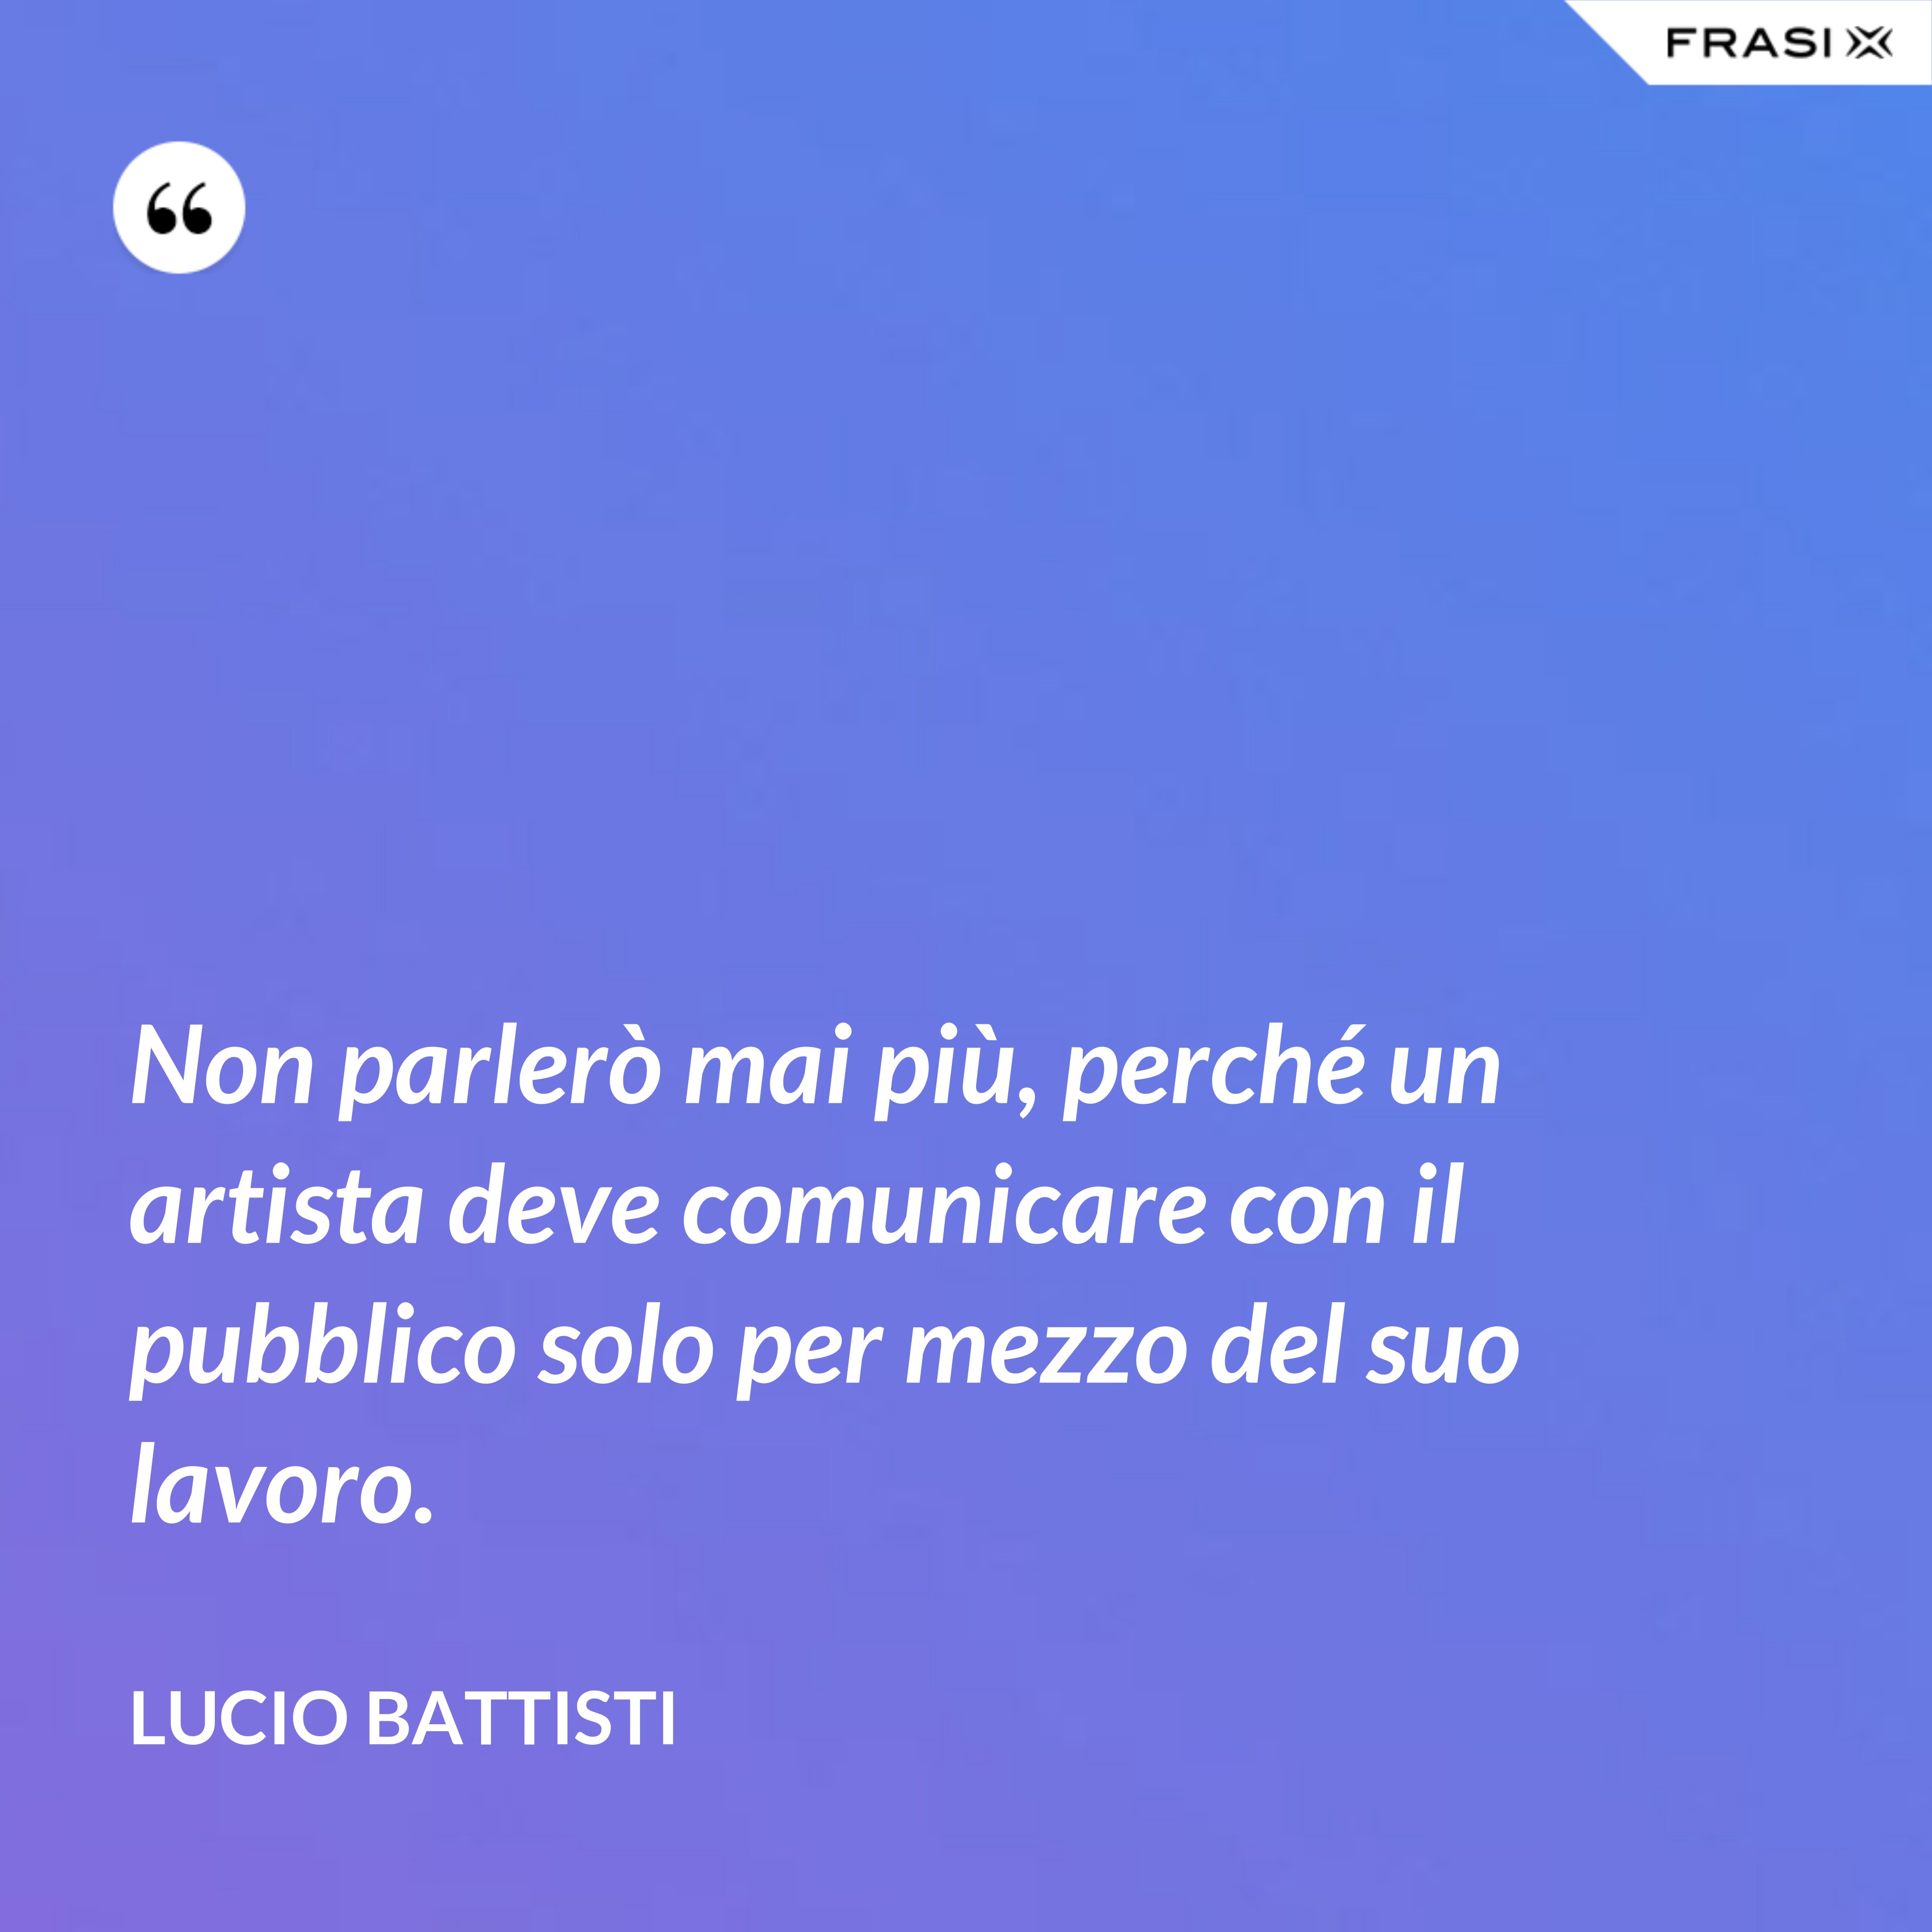 Non parlerò mai più, perché un artista deve comunicare con il pubblico solo per mezzo del suo lavoro. - Lucio Battisti